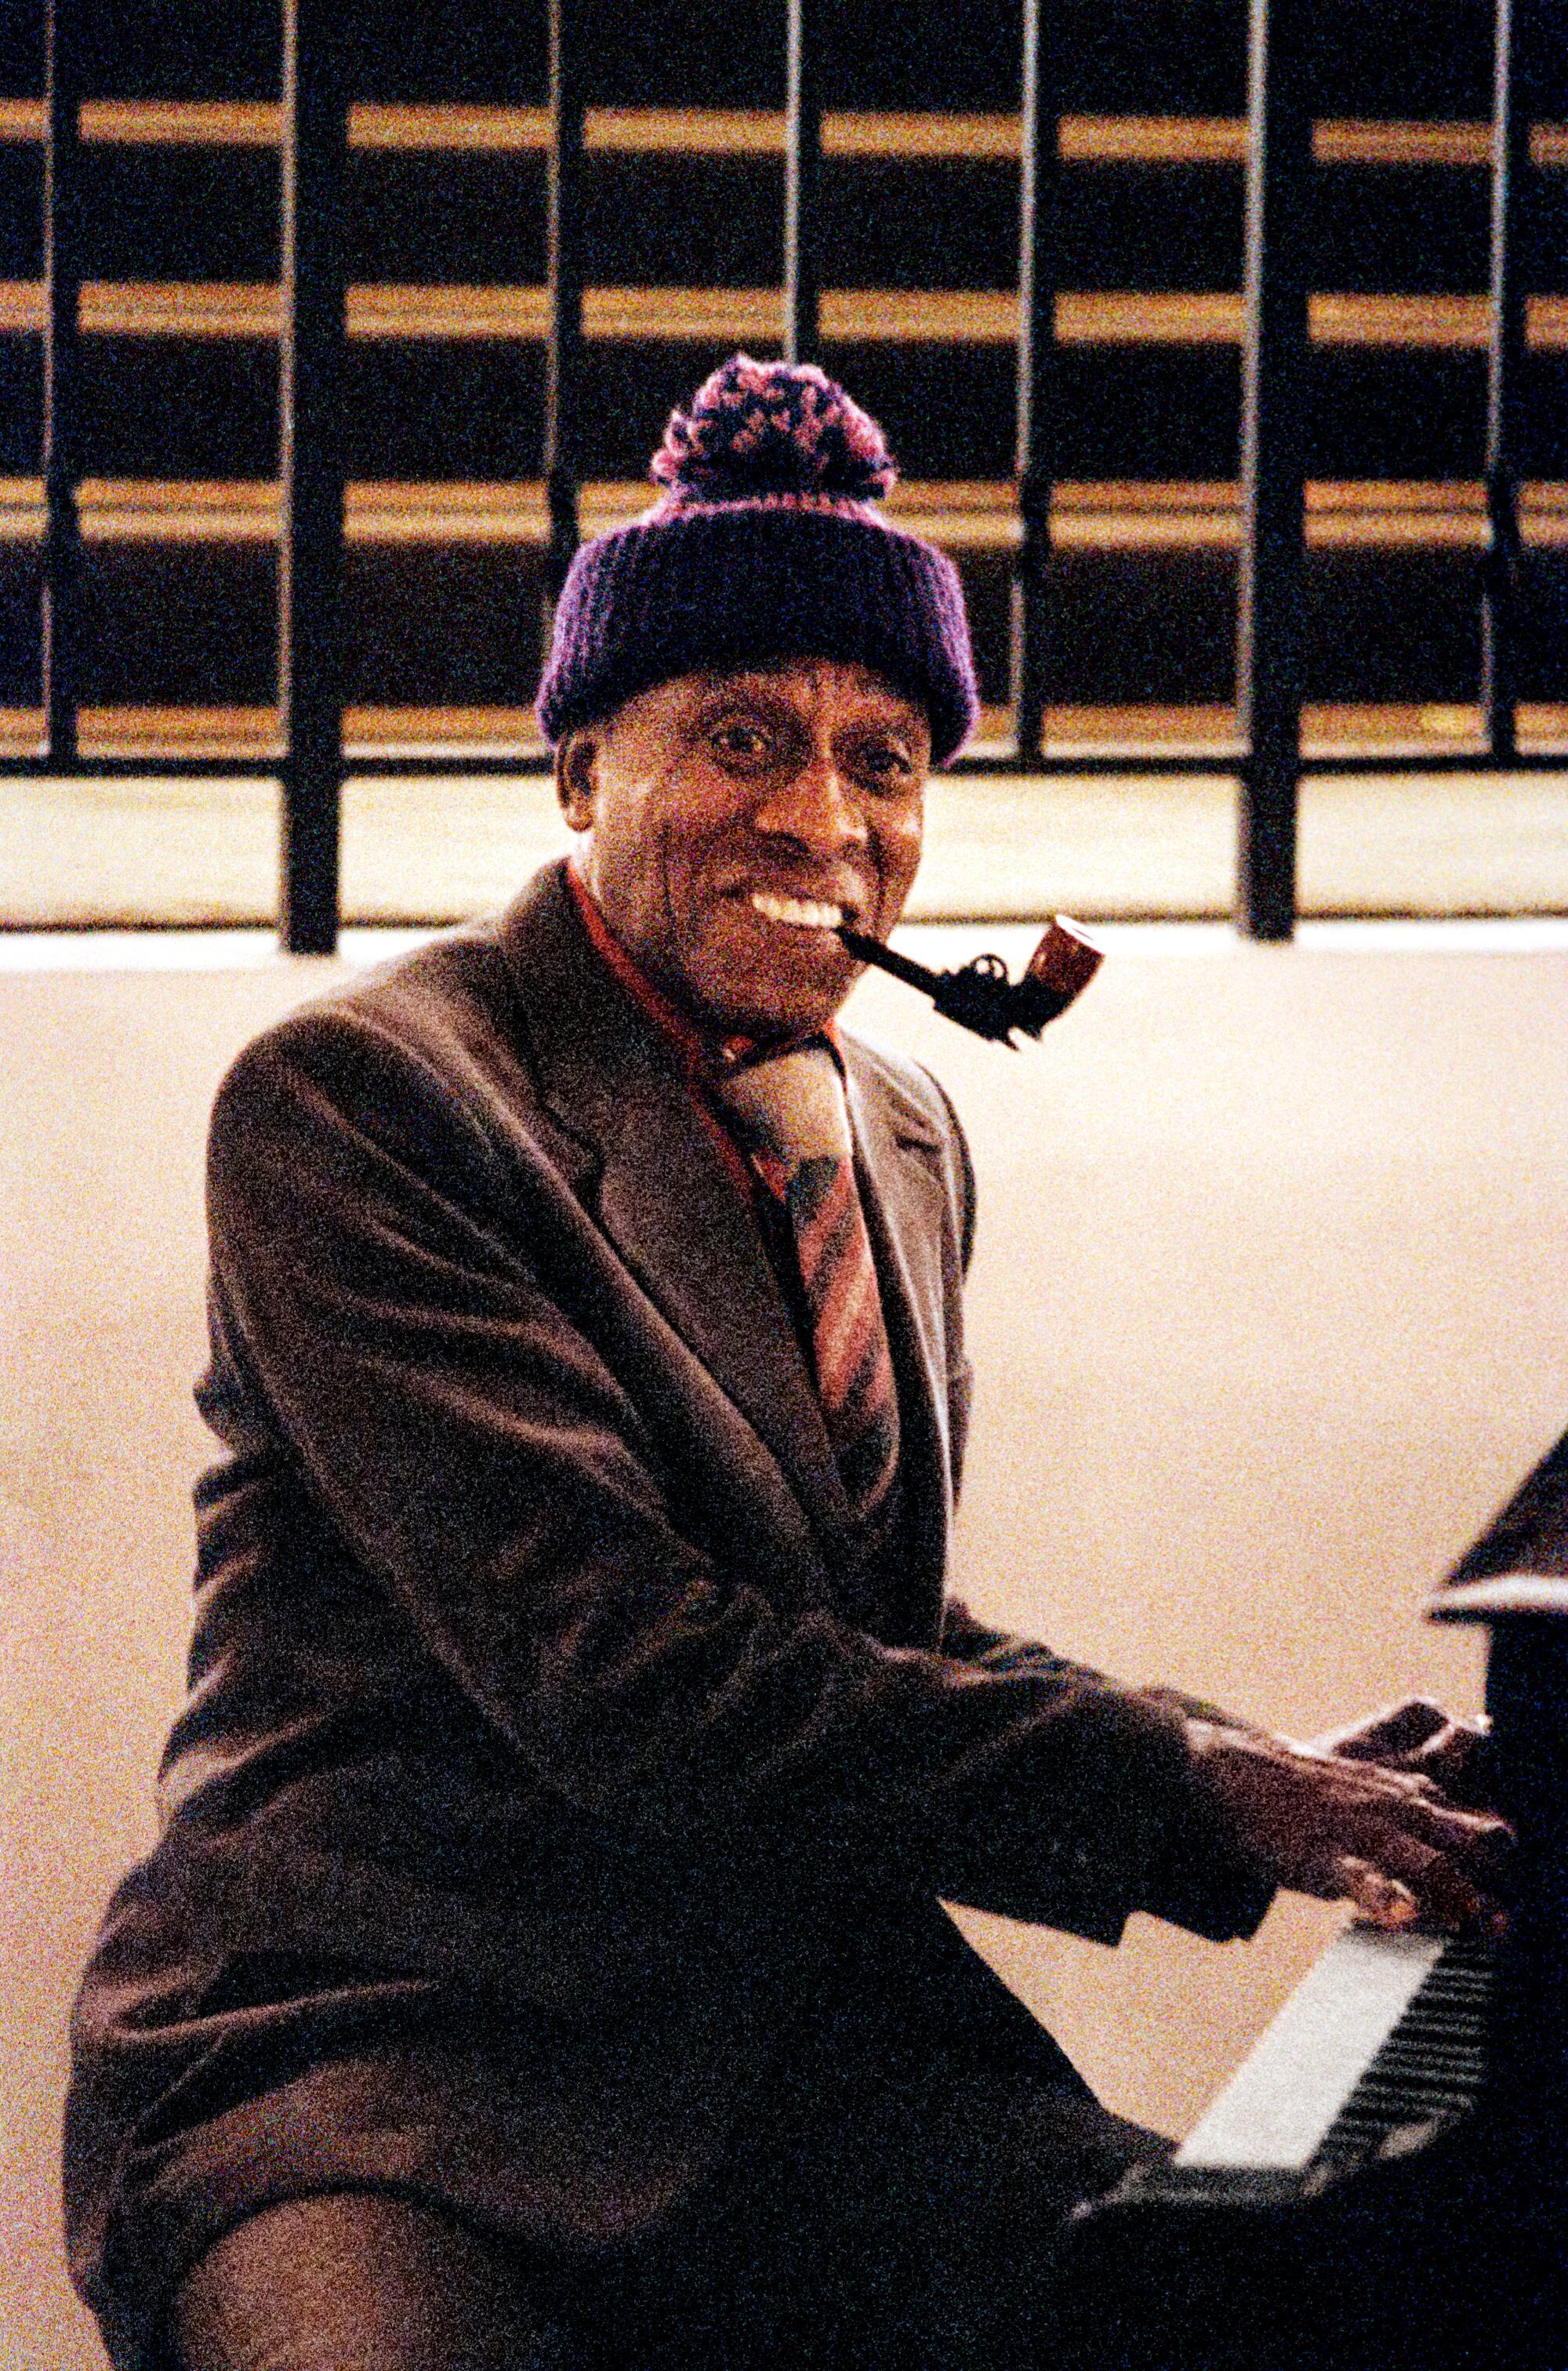 A man at a piano smiles